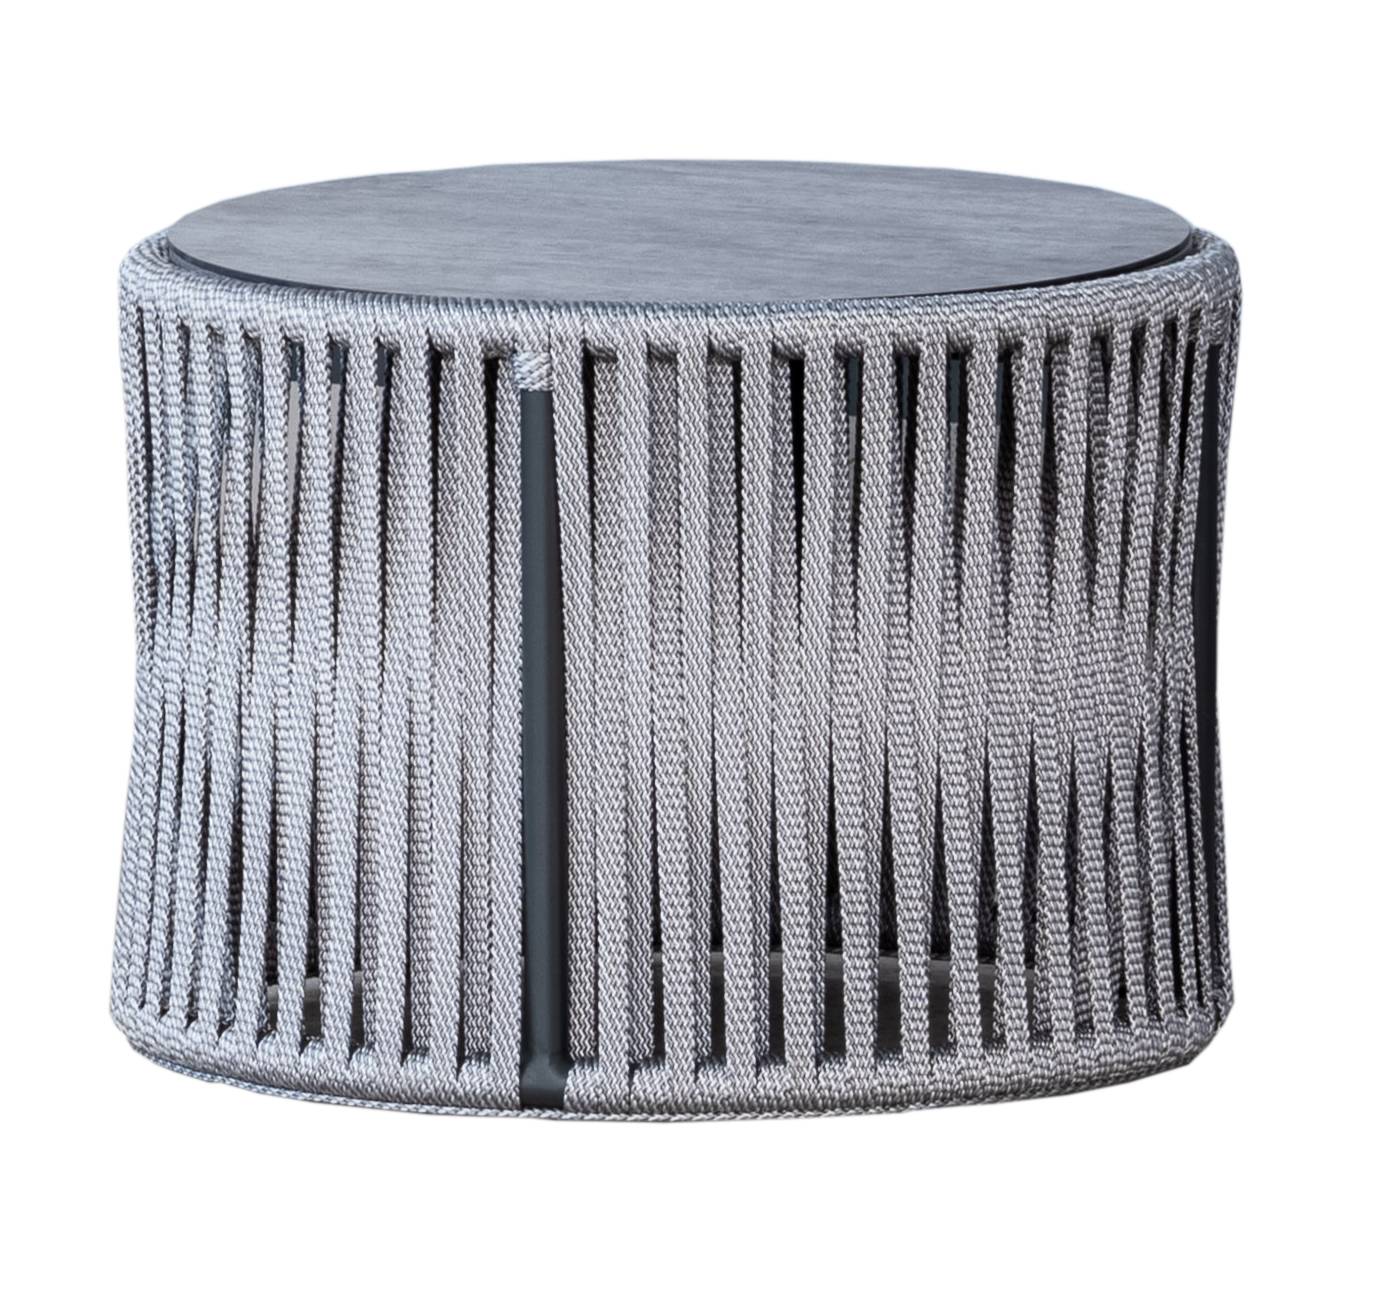 Set Cuerda Yina-7 - Conjunto aluminio color antracita y cuerda color gris: 1 sofá de 2 plazas + 2 sillones + 1 mesa de centro.